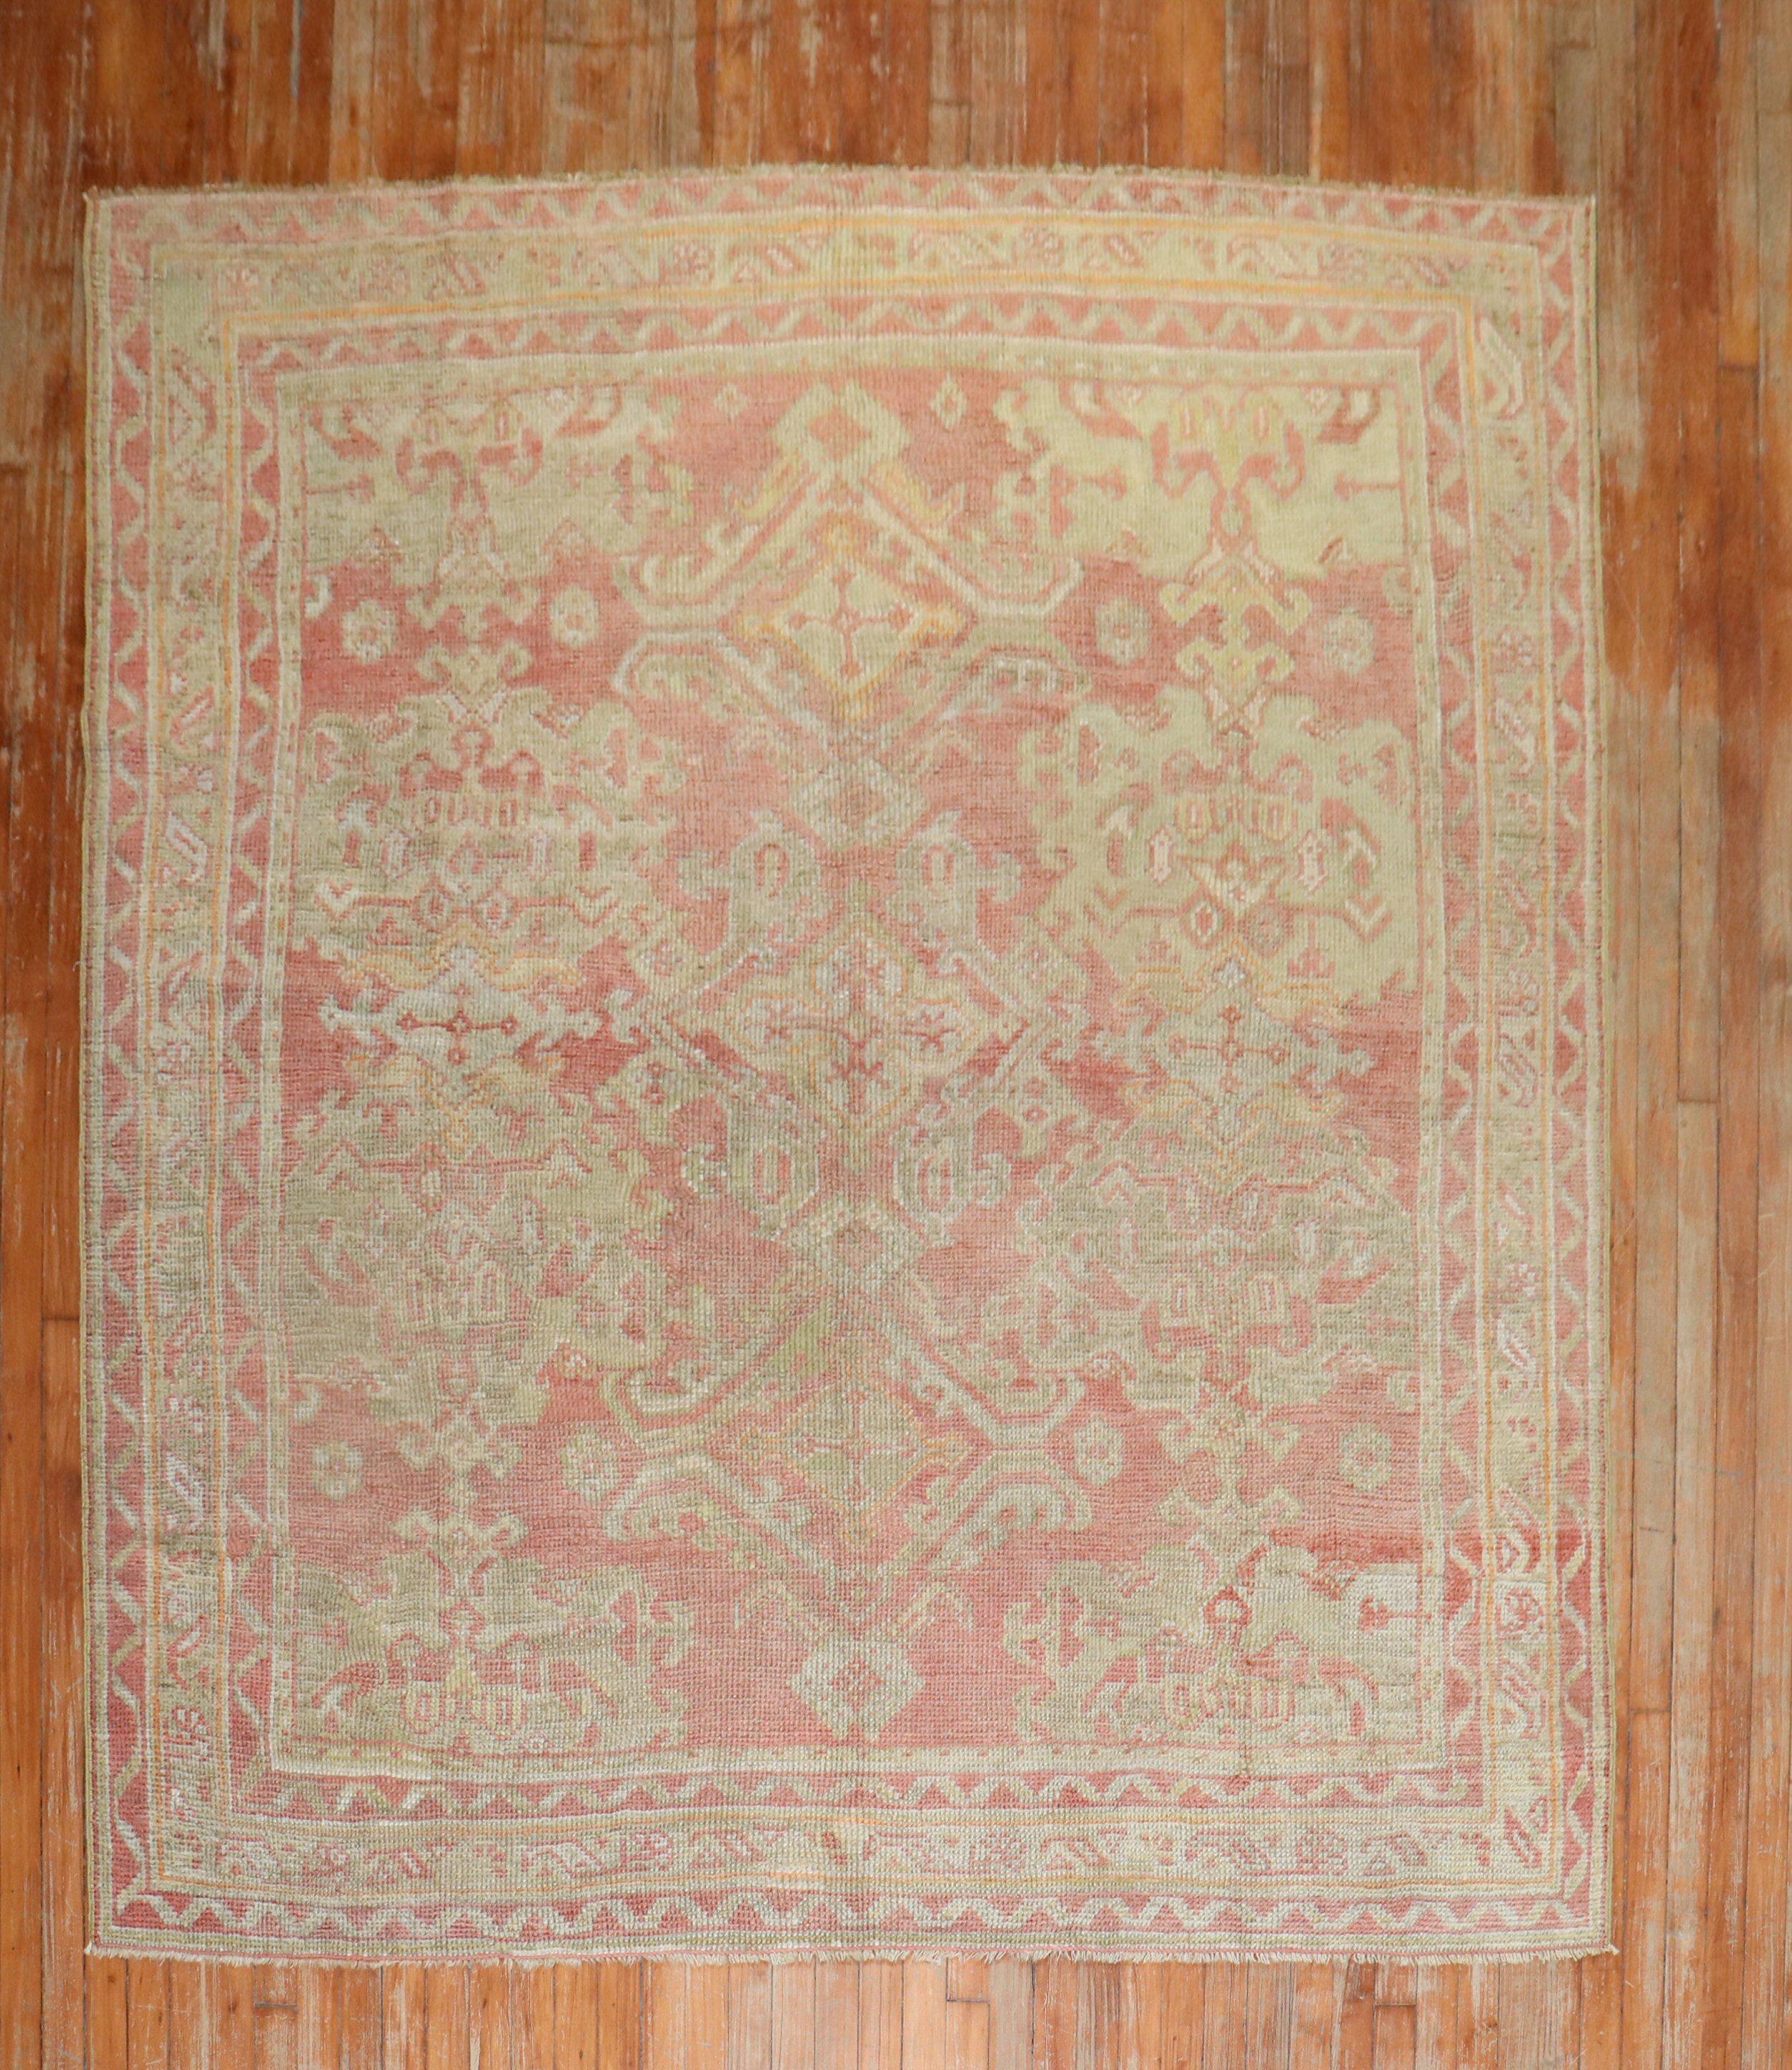 ein quadratischer türkischer Oushak-Teppich aus dem frühen 20. Jahrhundert

Einzelheiten
Teppich nein.	j2078
Größe	6' 9